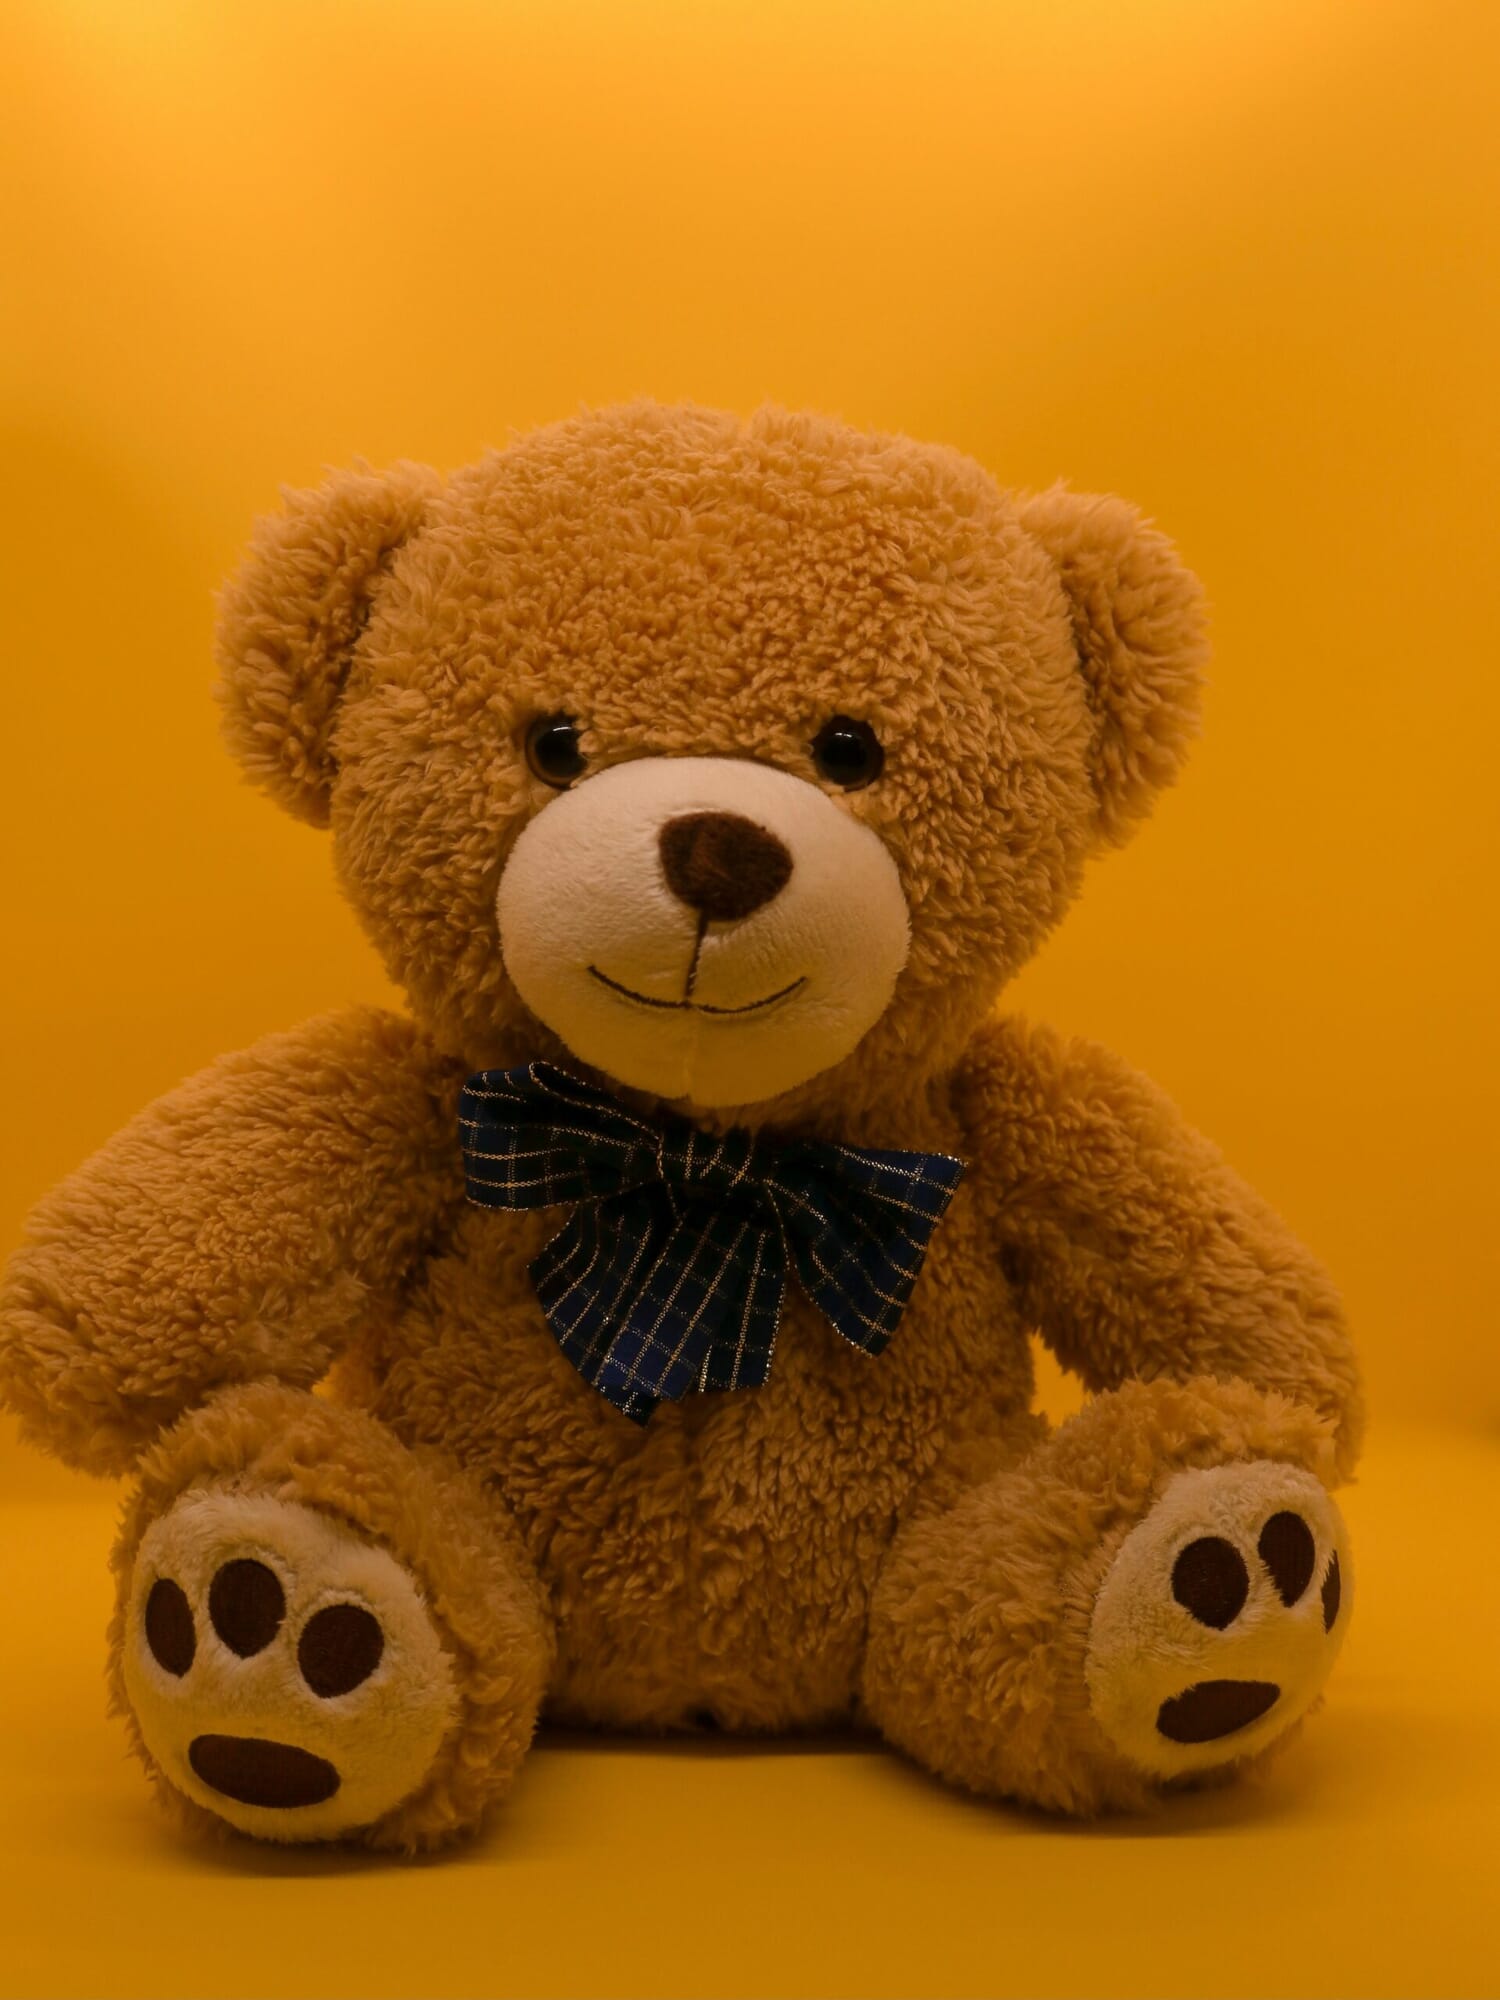 teddy-bear-scaled.jpg?w=1500&h=2000&scale